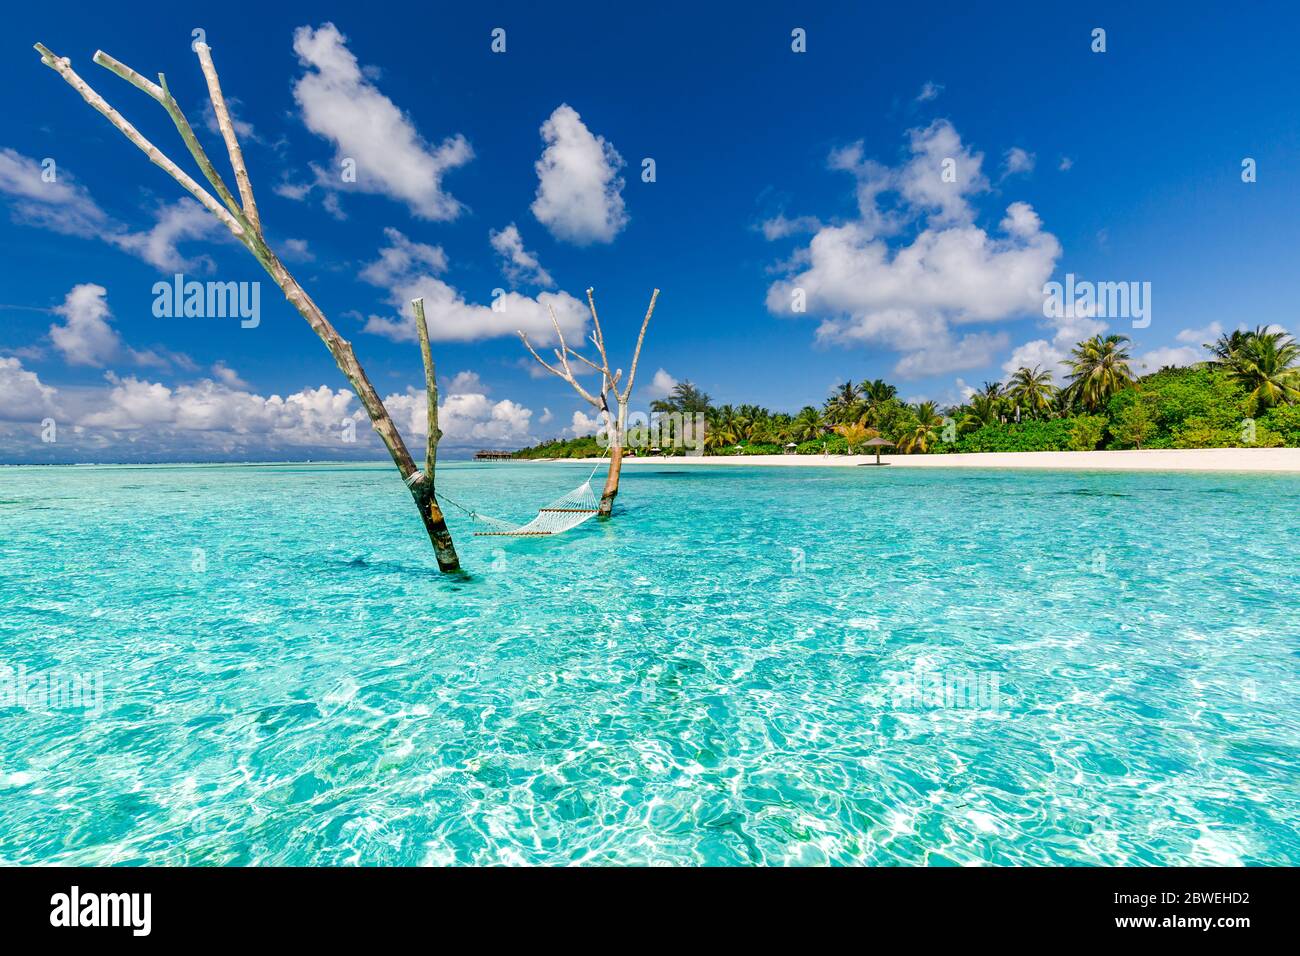 Luxus-Hängematte am Wasser in der paradiesischen Insel Meer Lagune. Sommer Strand Reise und exotischen Urlaubsziel. Inspirierende tropische Strandreise Landschaft Stockfoto